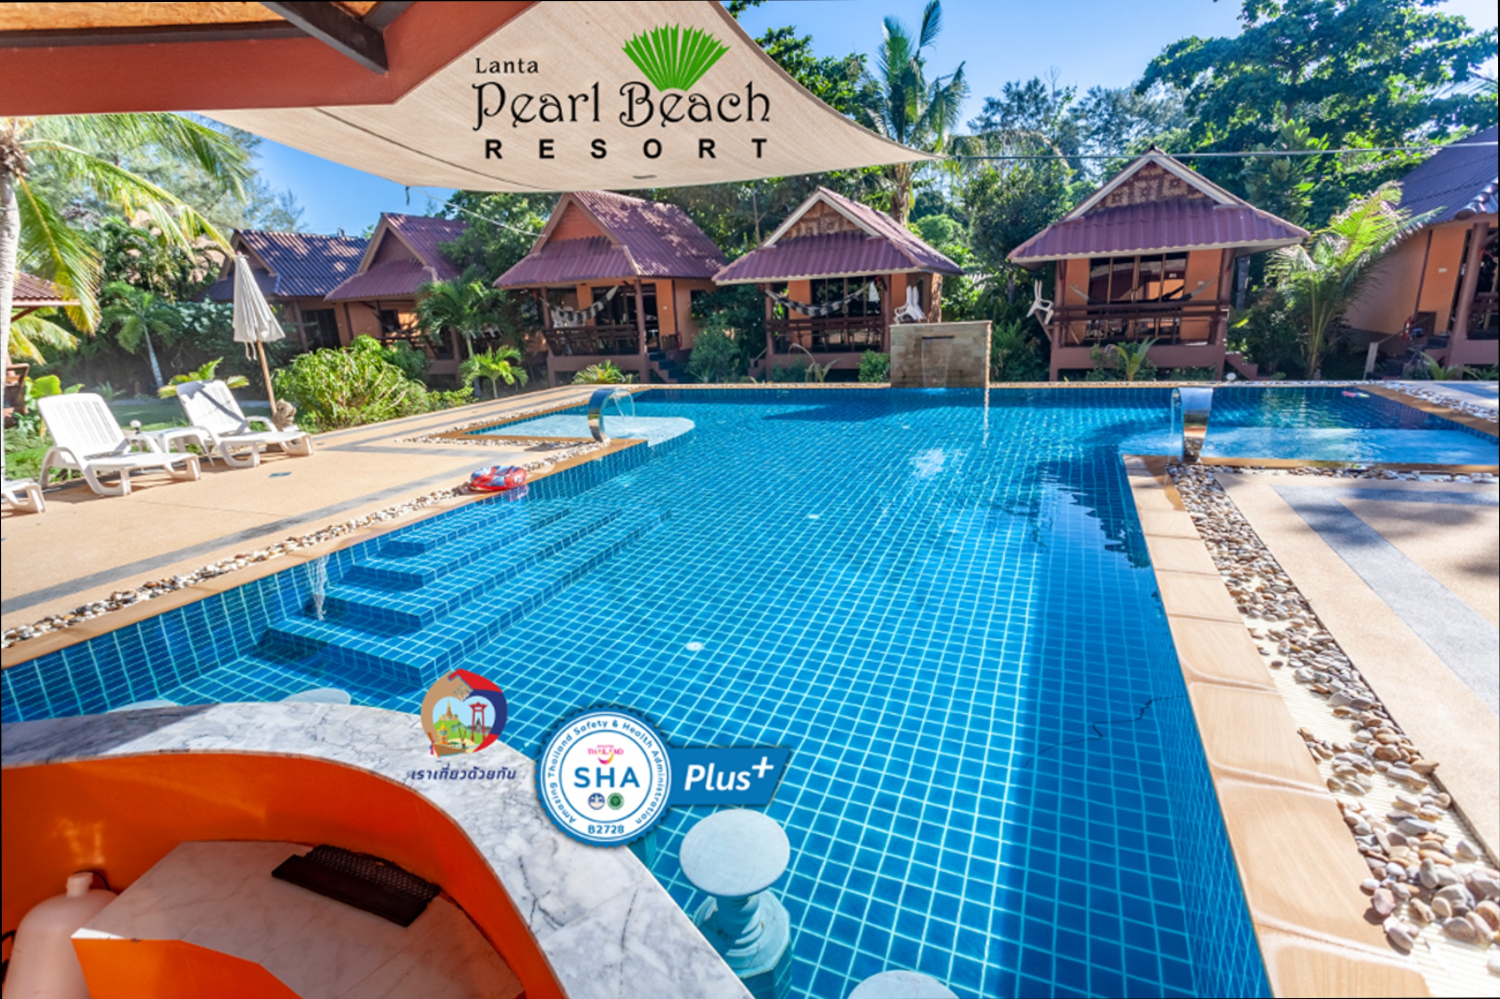 Lanta Pearl Beach Resort - 0